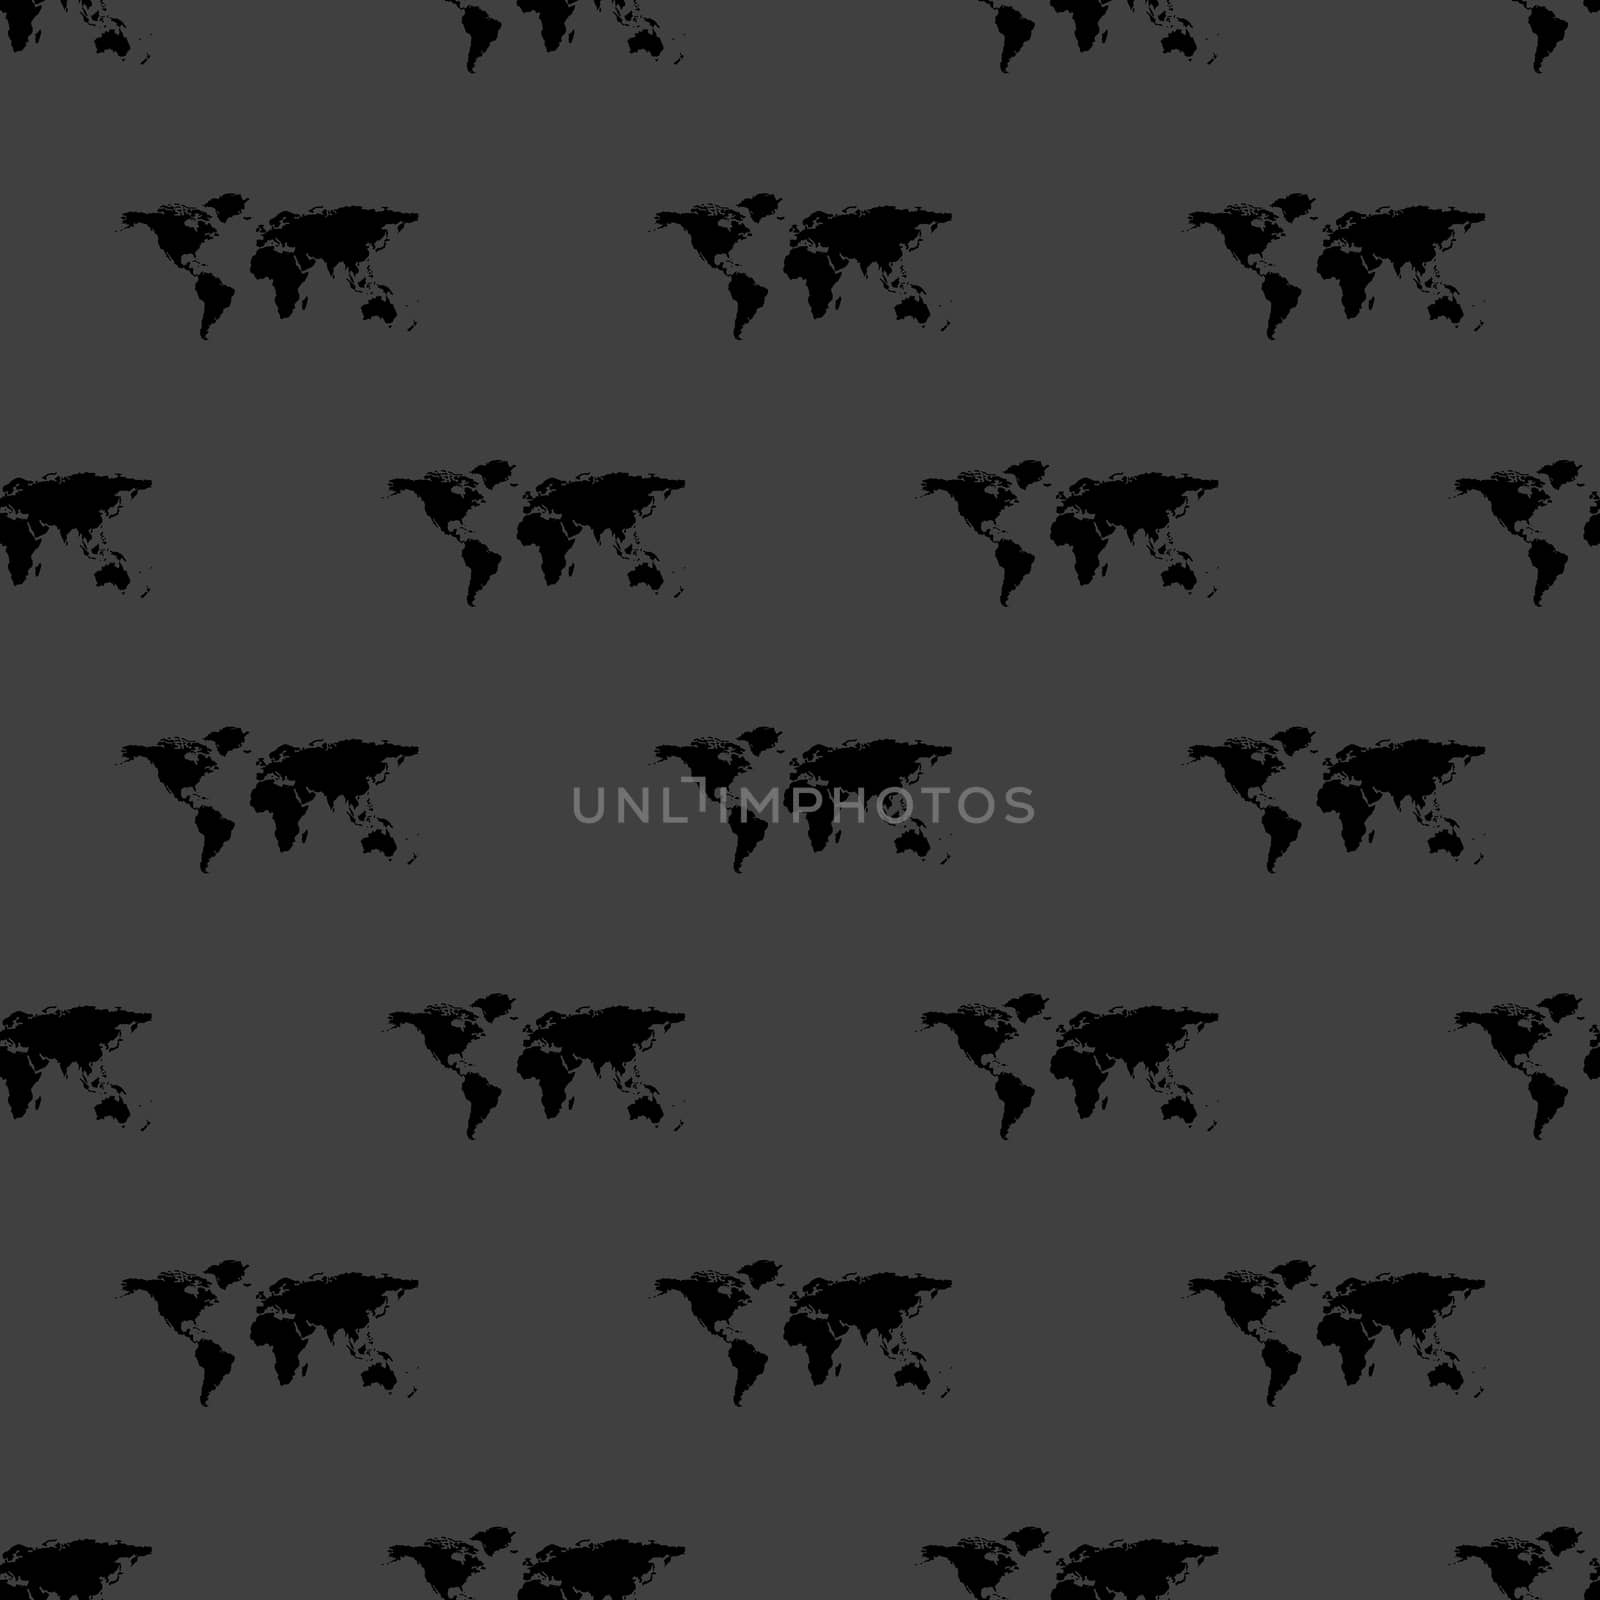 World map web icon. flat design. Seamless gray pattern. by serhii_lohvyniuk